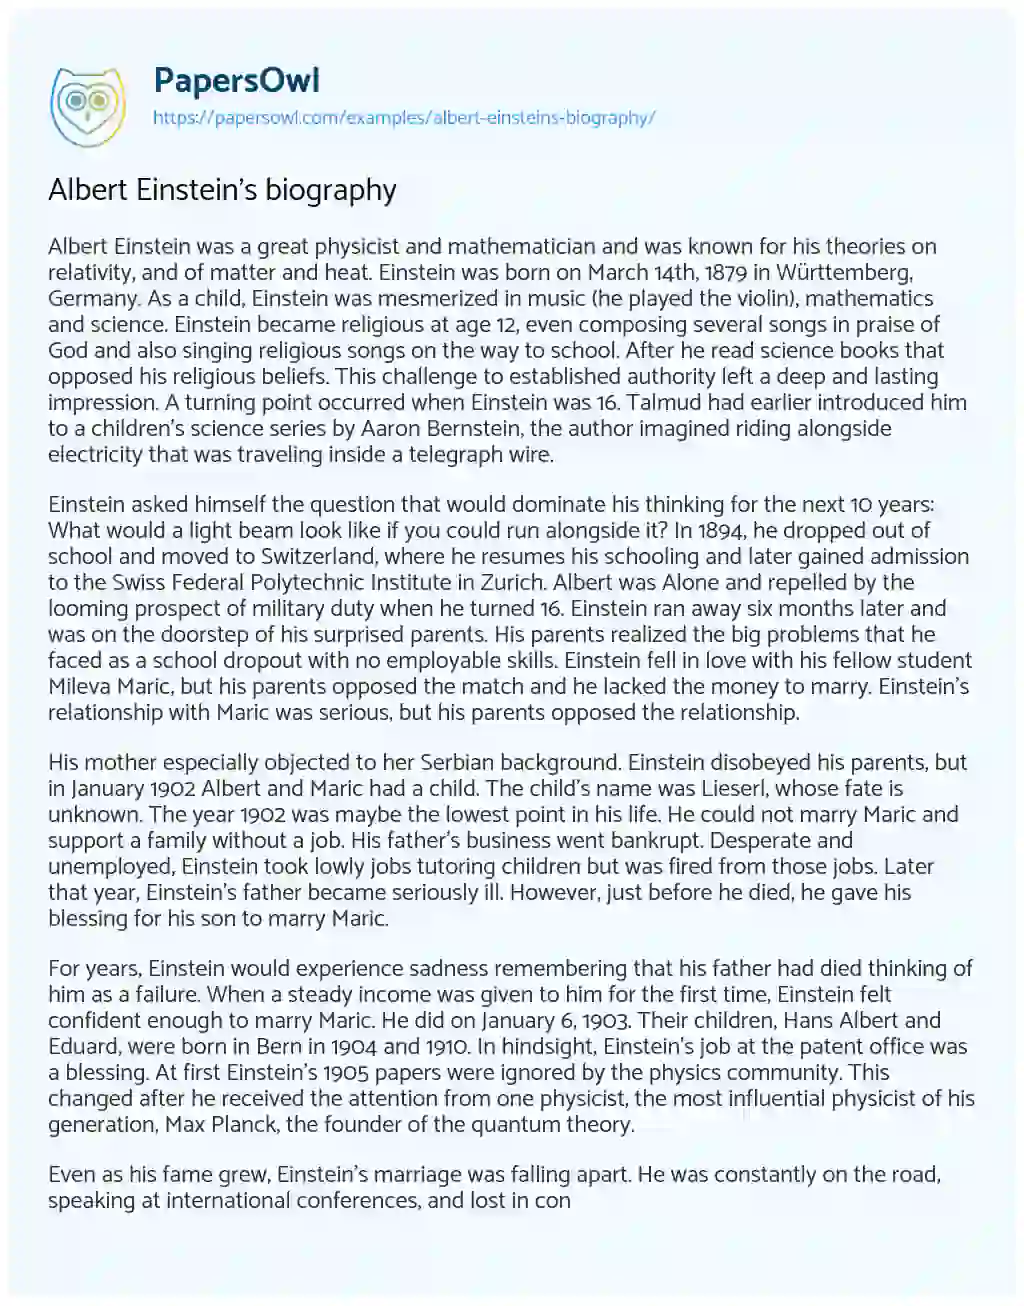 Albert Einstein’s Biography essay